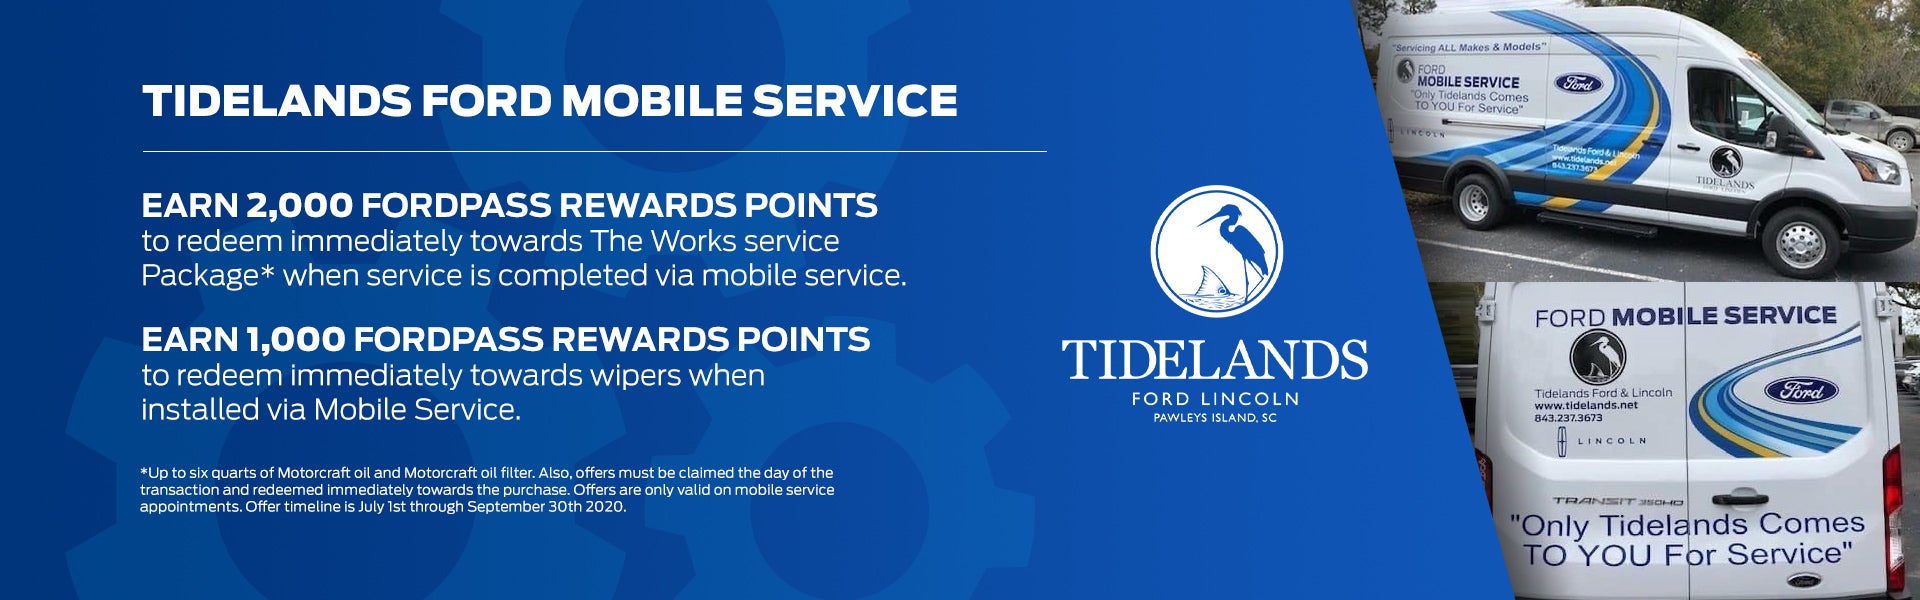 Tidelands Ford Mobile Service